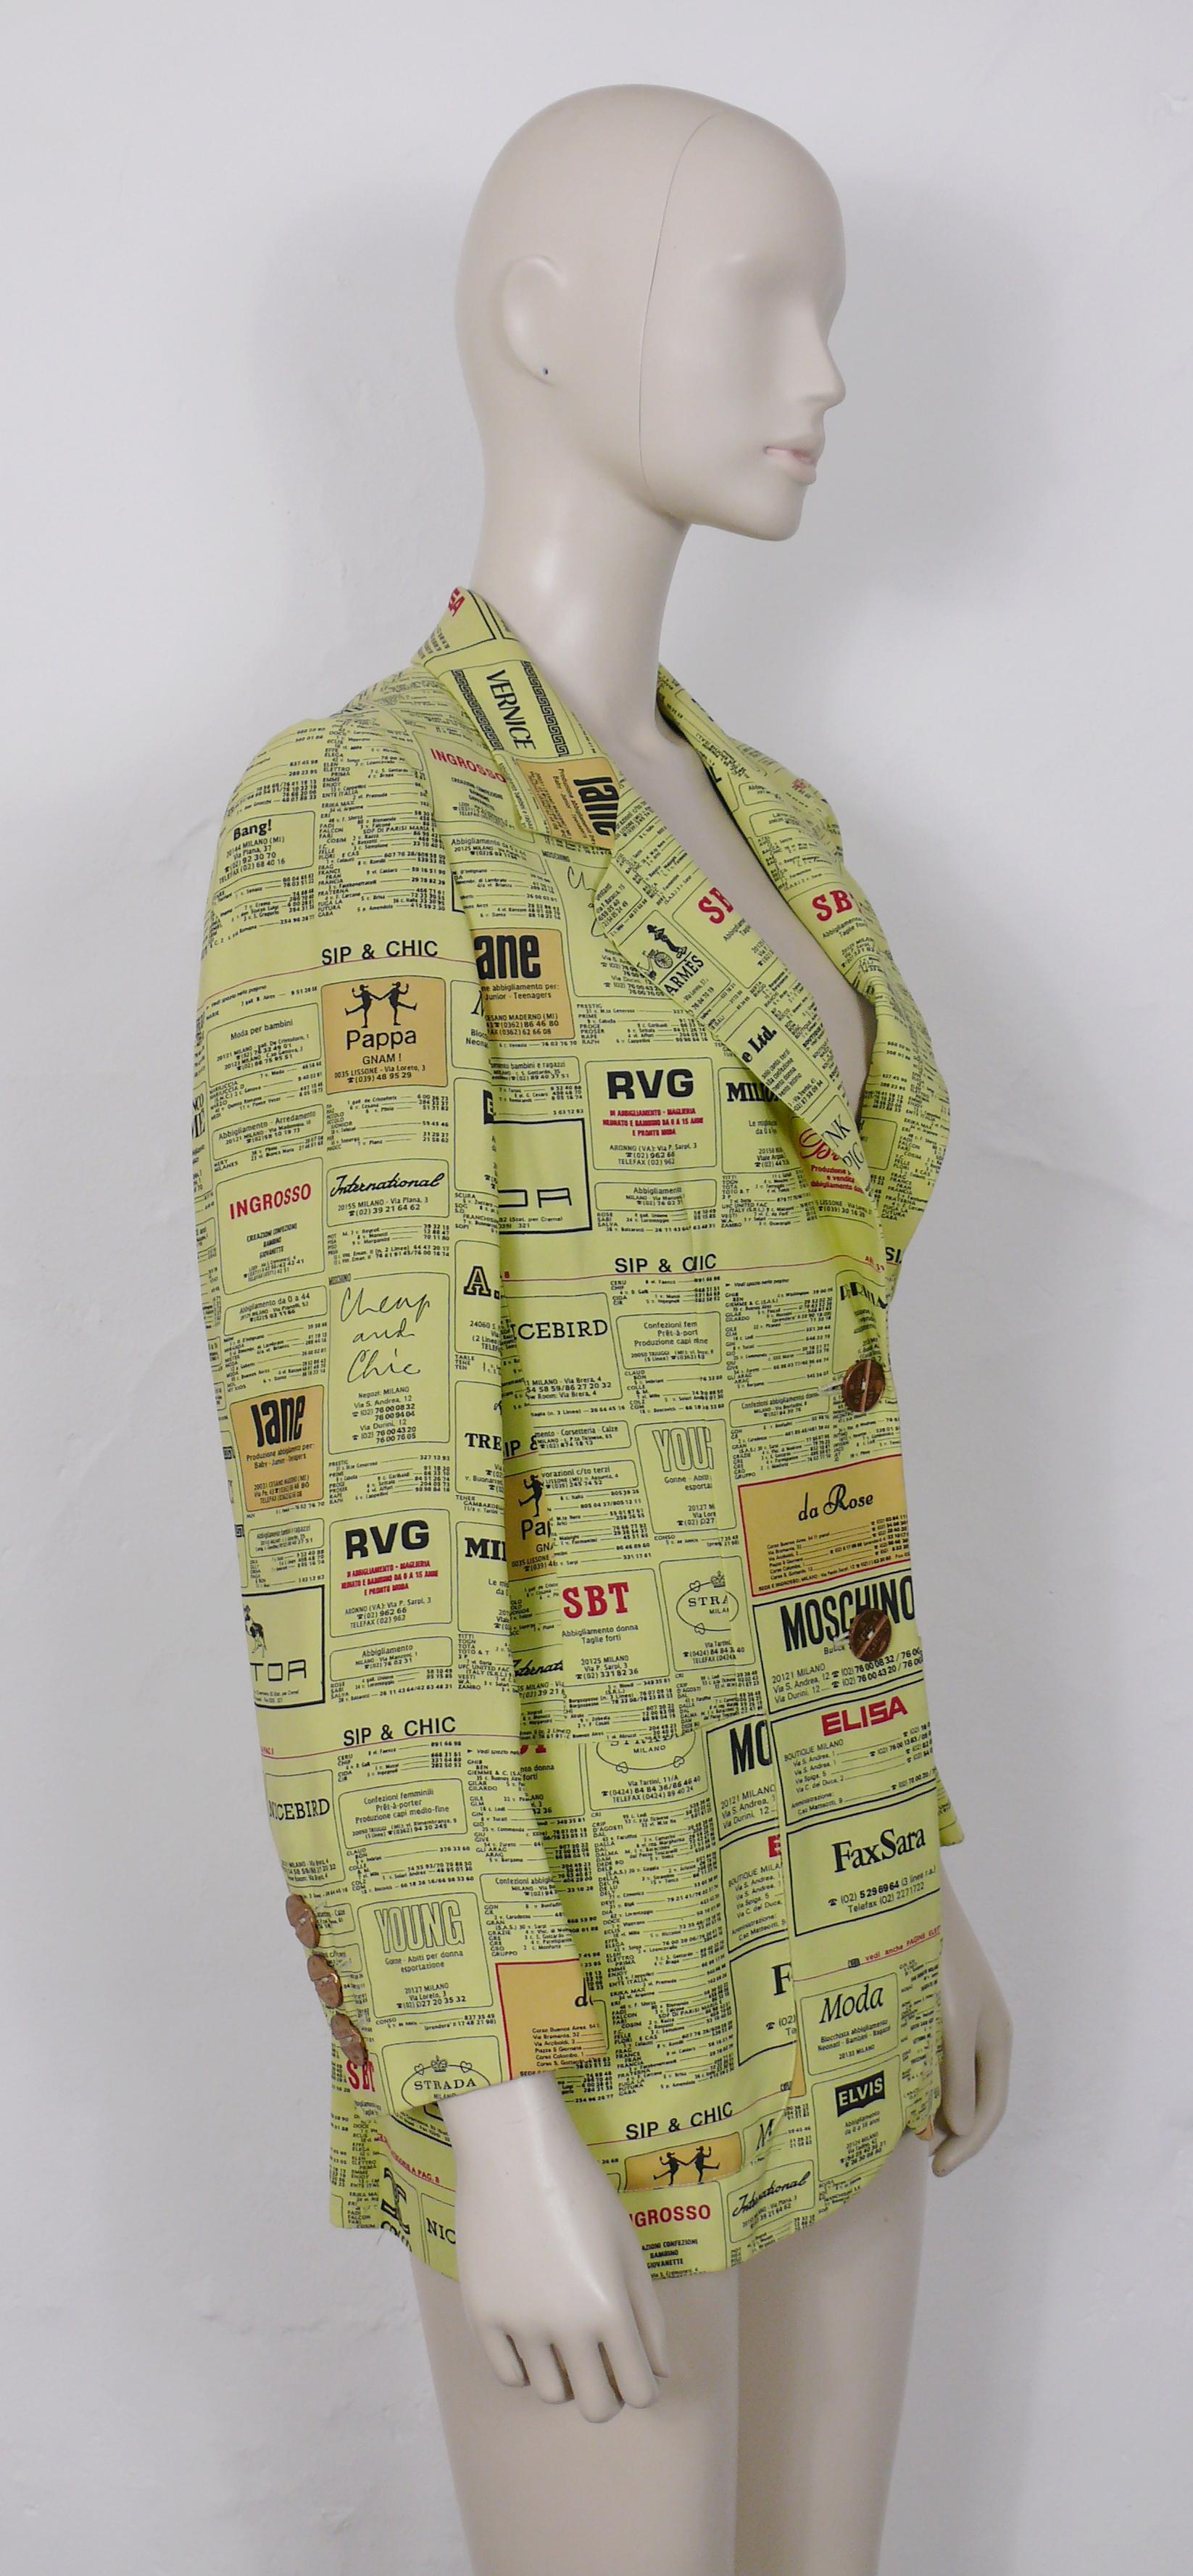 MOSCHINO Vintage-Jacke mit bedruckten gelben Seiten.

Diese Jacke verfügt über Werbeseiten aus dem Mailänder Telefonverzeichnis mit Logos von Modehäusern wie HERMES (hier CHARMES) und MAX MARA (die als FAX SARA erscheinen)... Die Knöpfe sind aus den